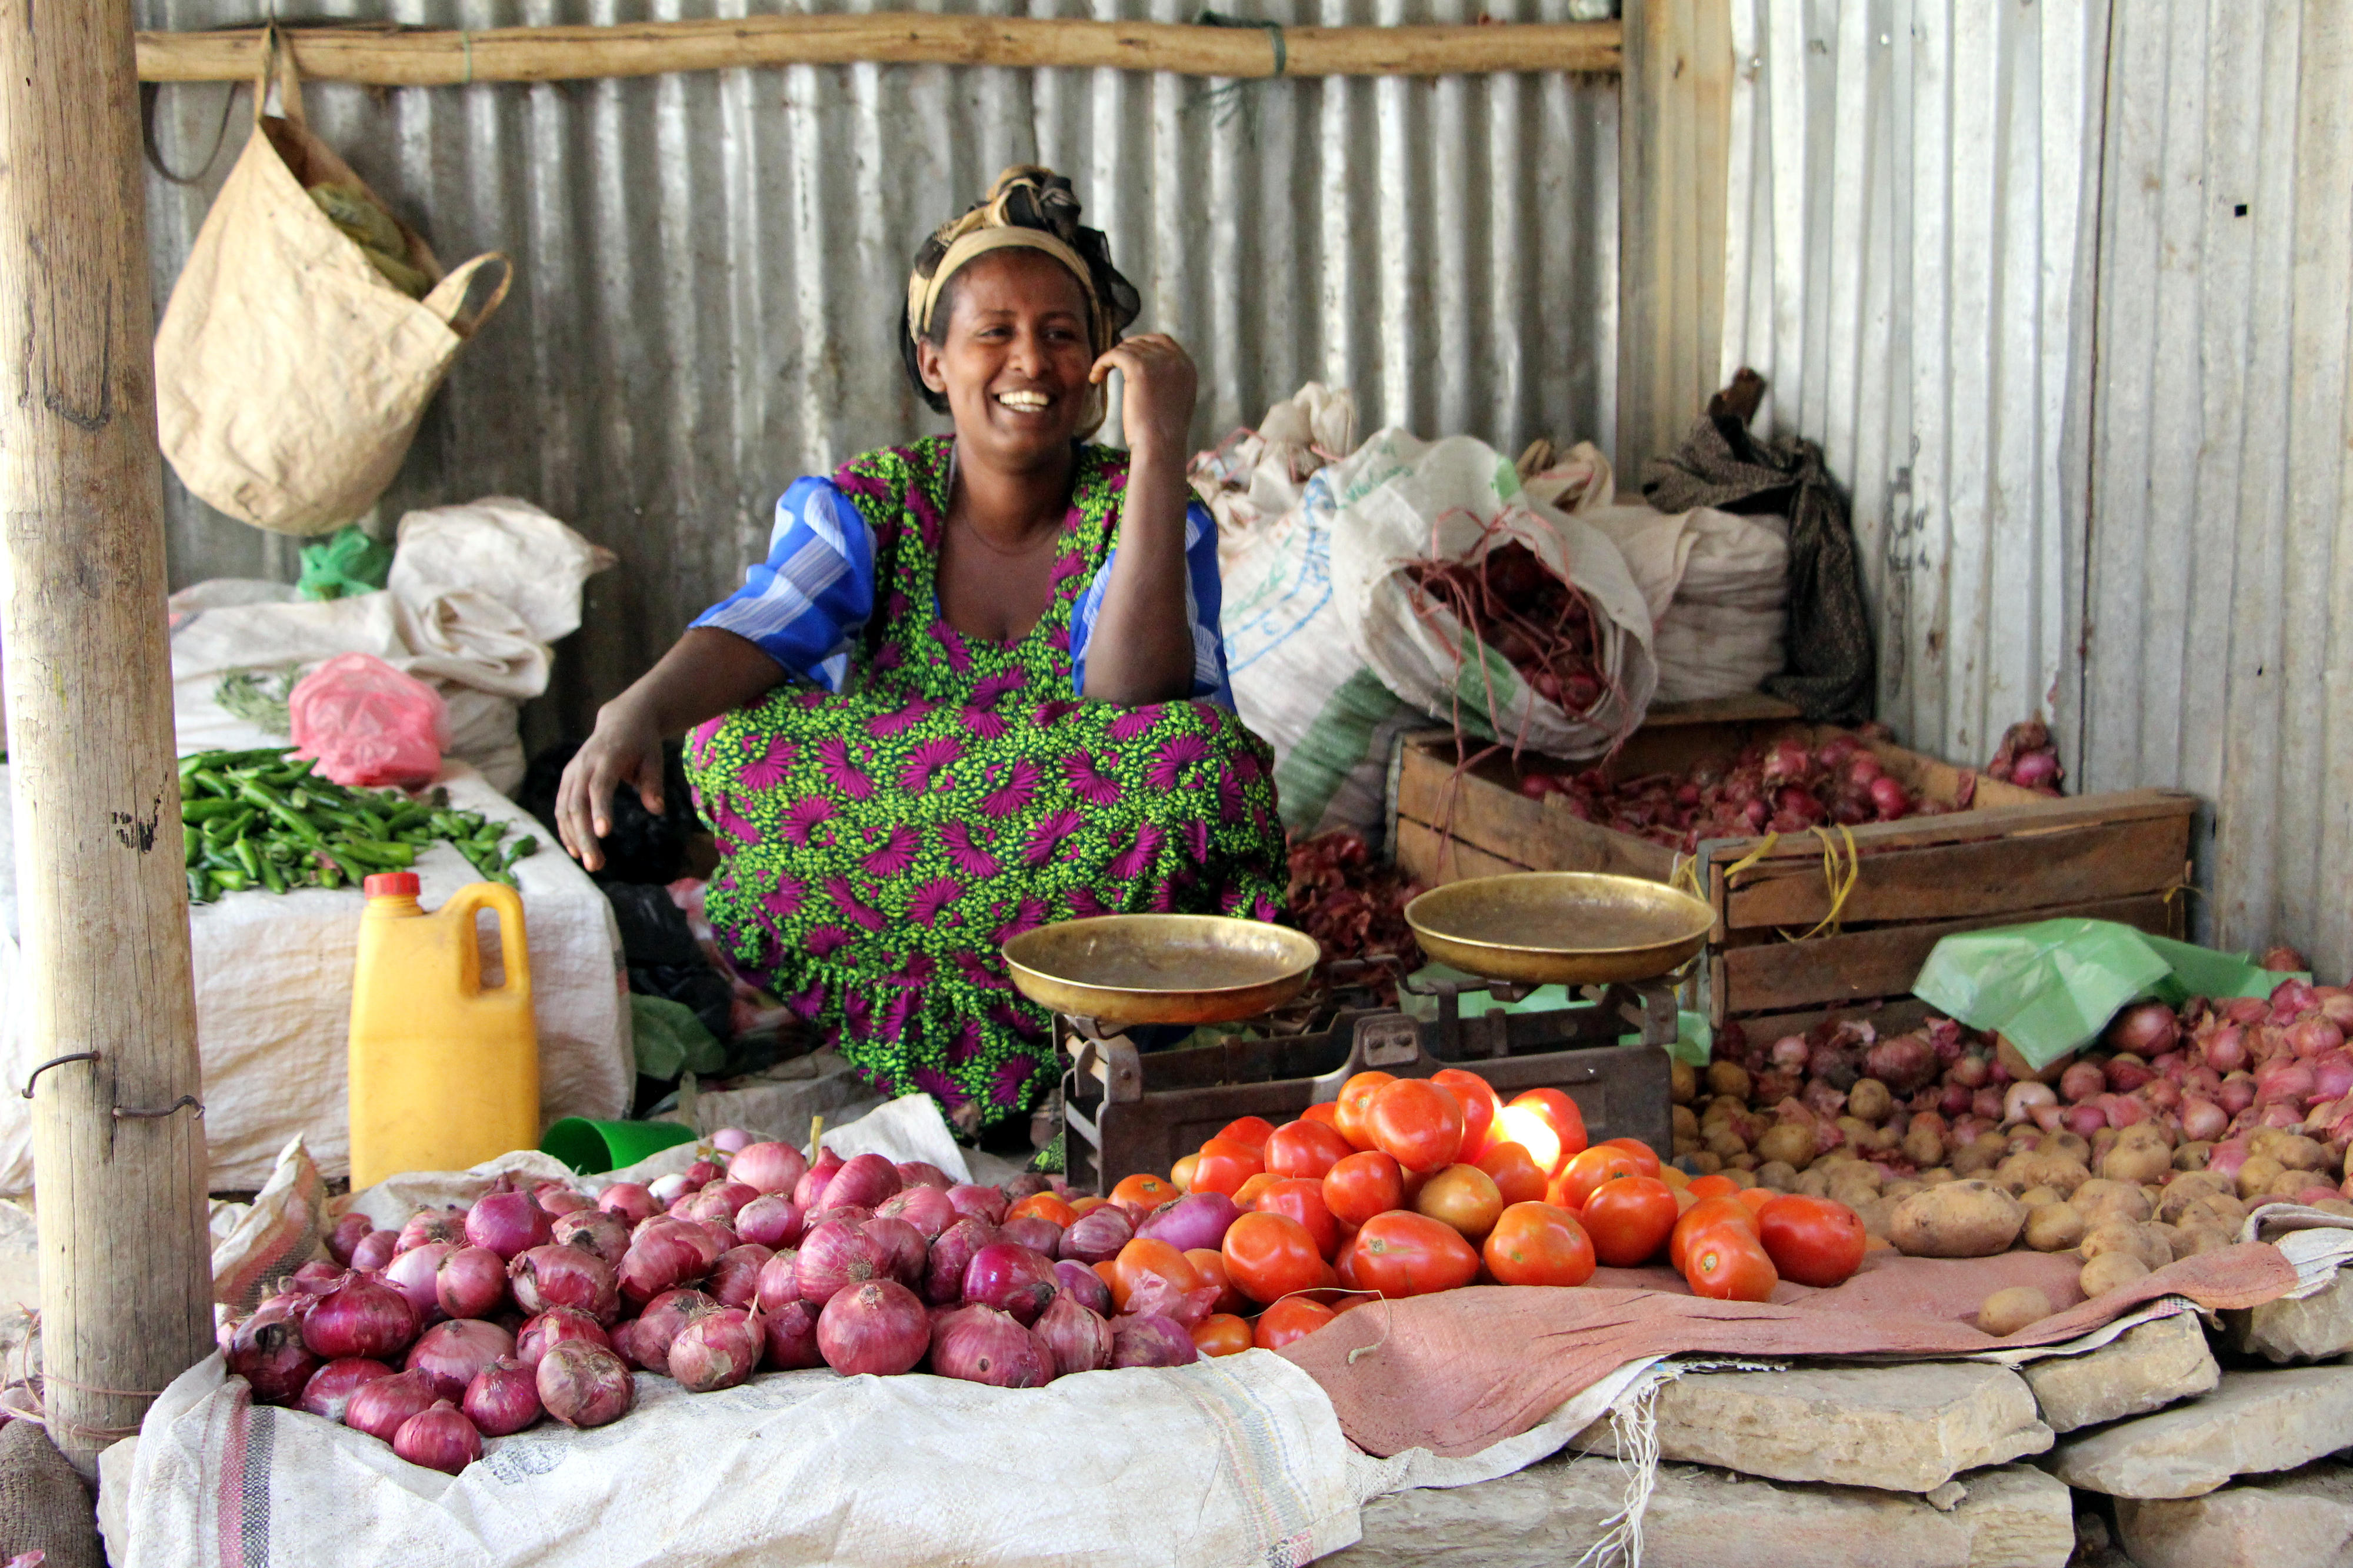 Marktstand in Mekelle, Äthiopien, mit Zwiebeln, Tomaten und Kartoffeln, die zum Kauf angeboten werden. Im Hintergrund steht eine Waage mit zwei leeren Waagschalen.